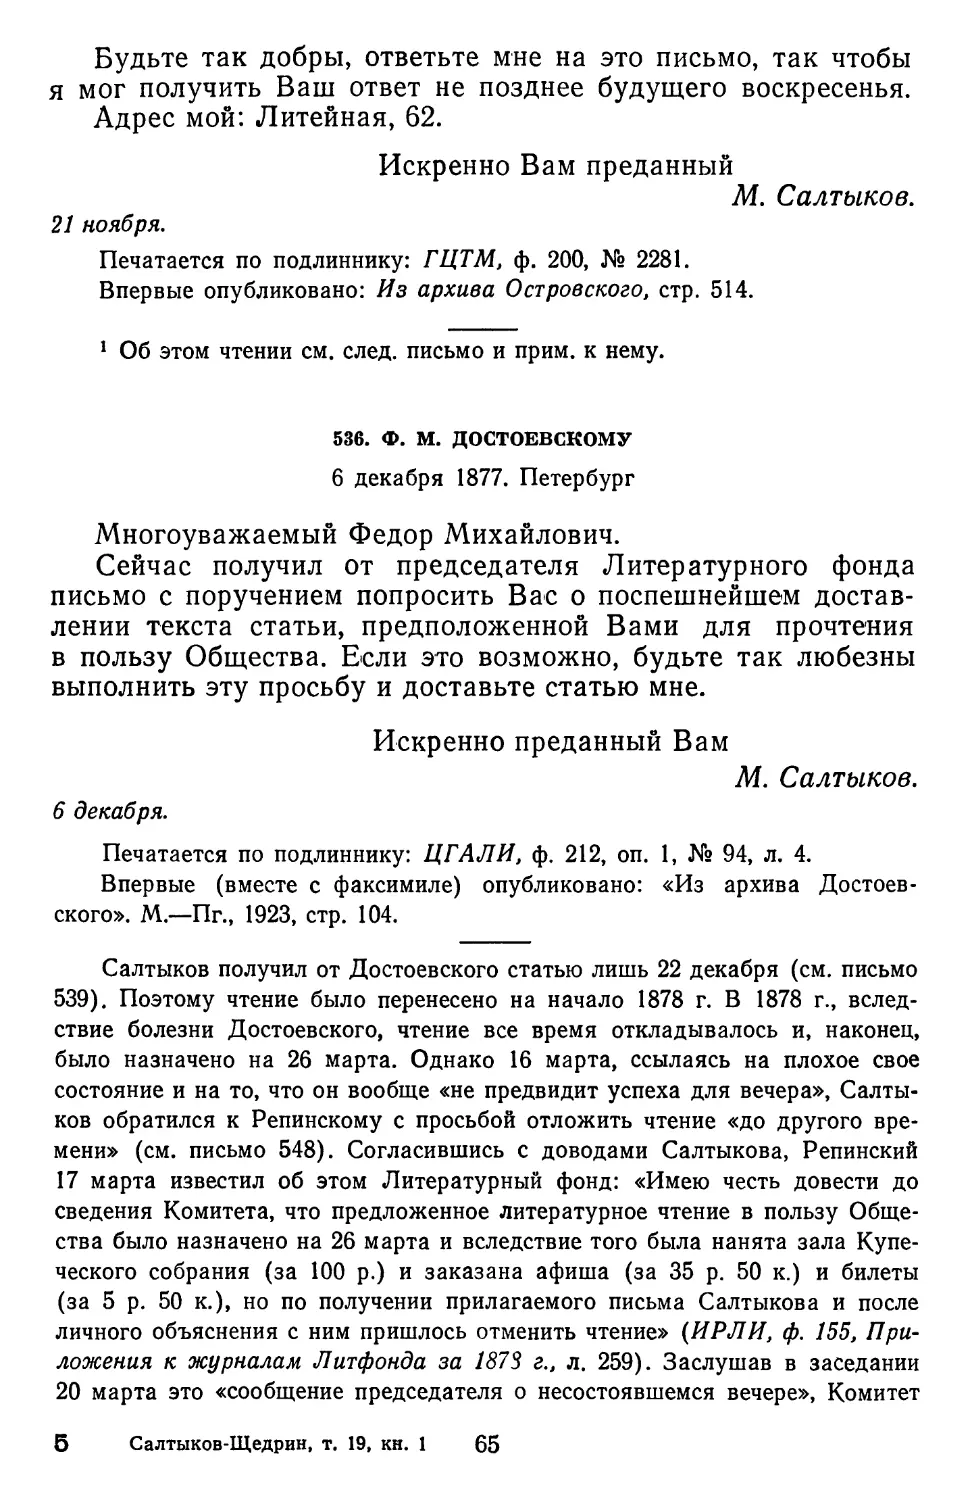 536.Ф. М. Достоевскому. 6 декабря 1877. Петербург